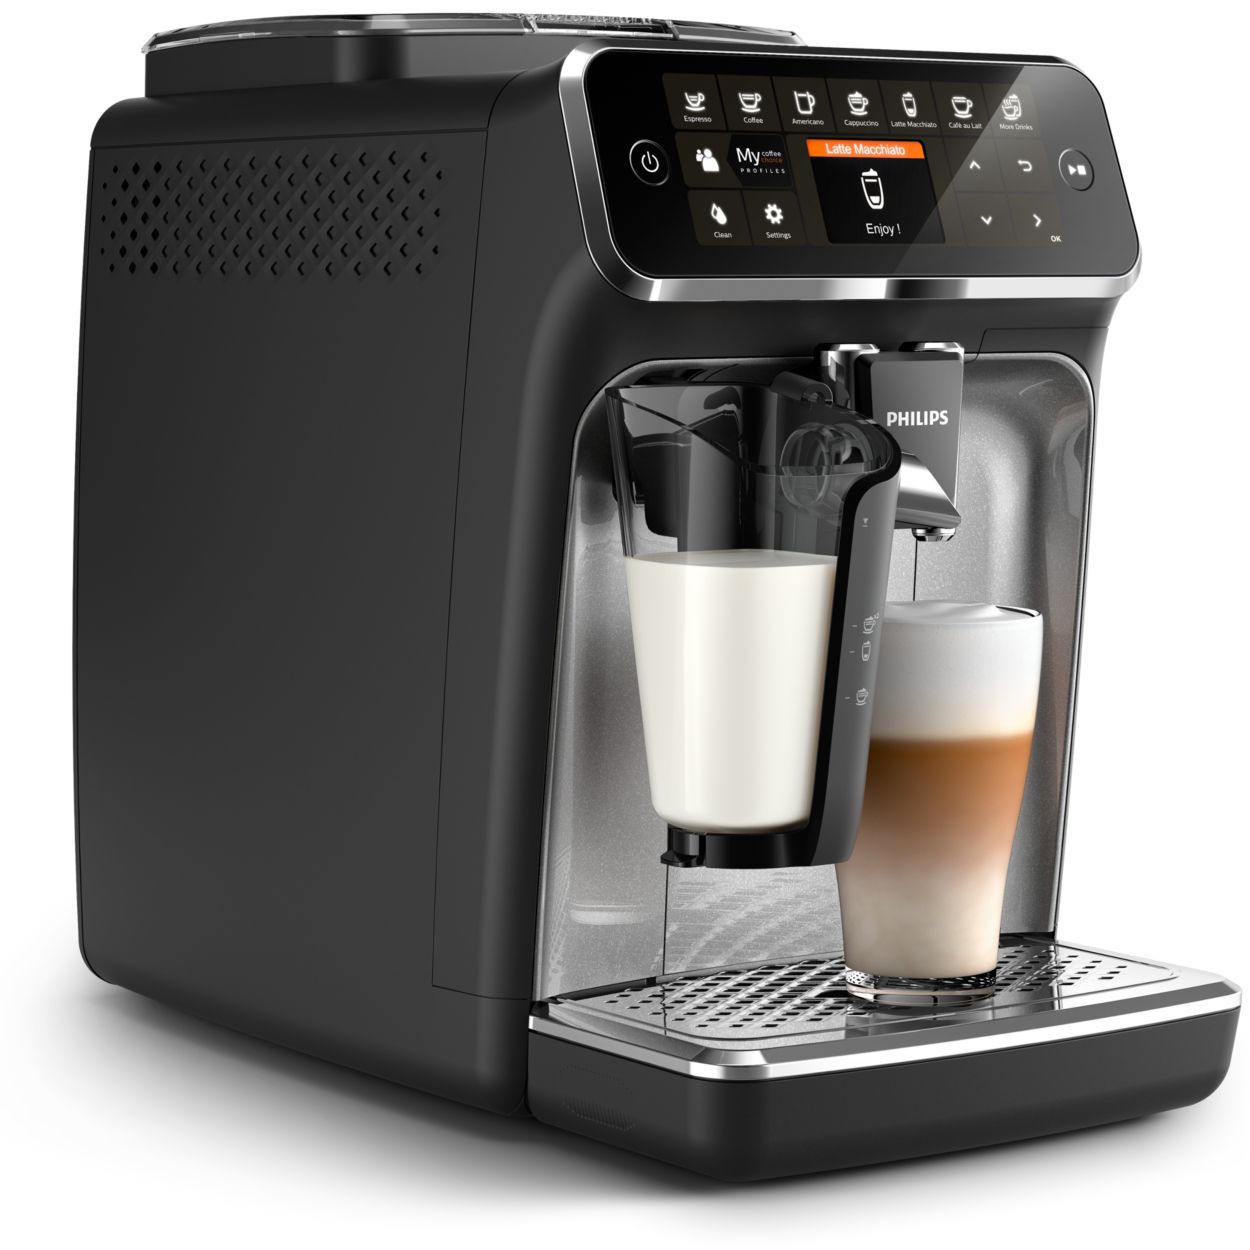 XD Enjoy XD Milkino Schiumatore per latte automatico Avorio vintage, Macchine caffè in Offerta su Stay On